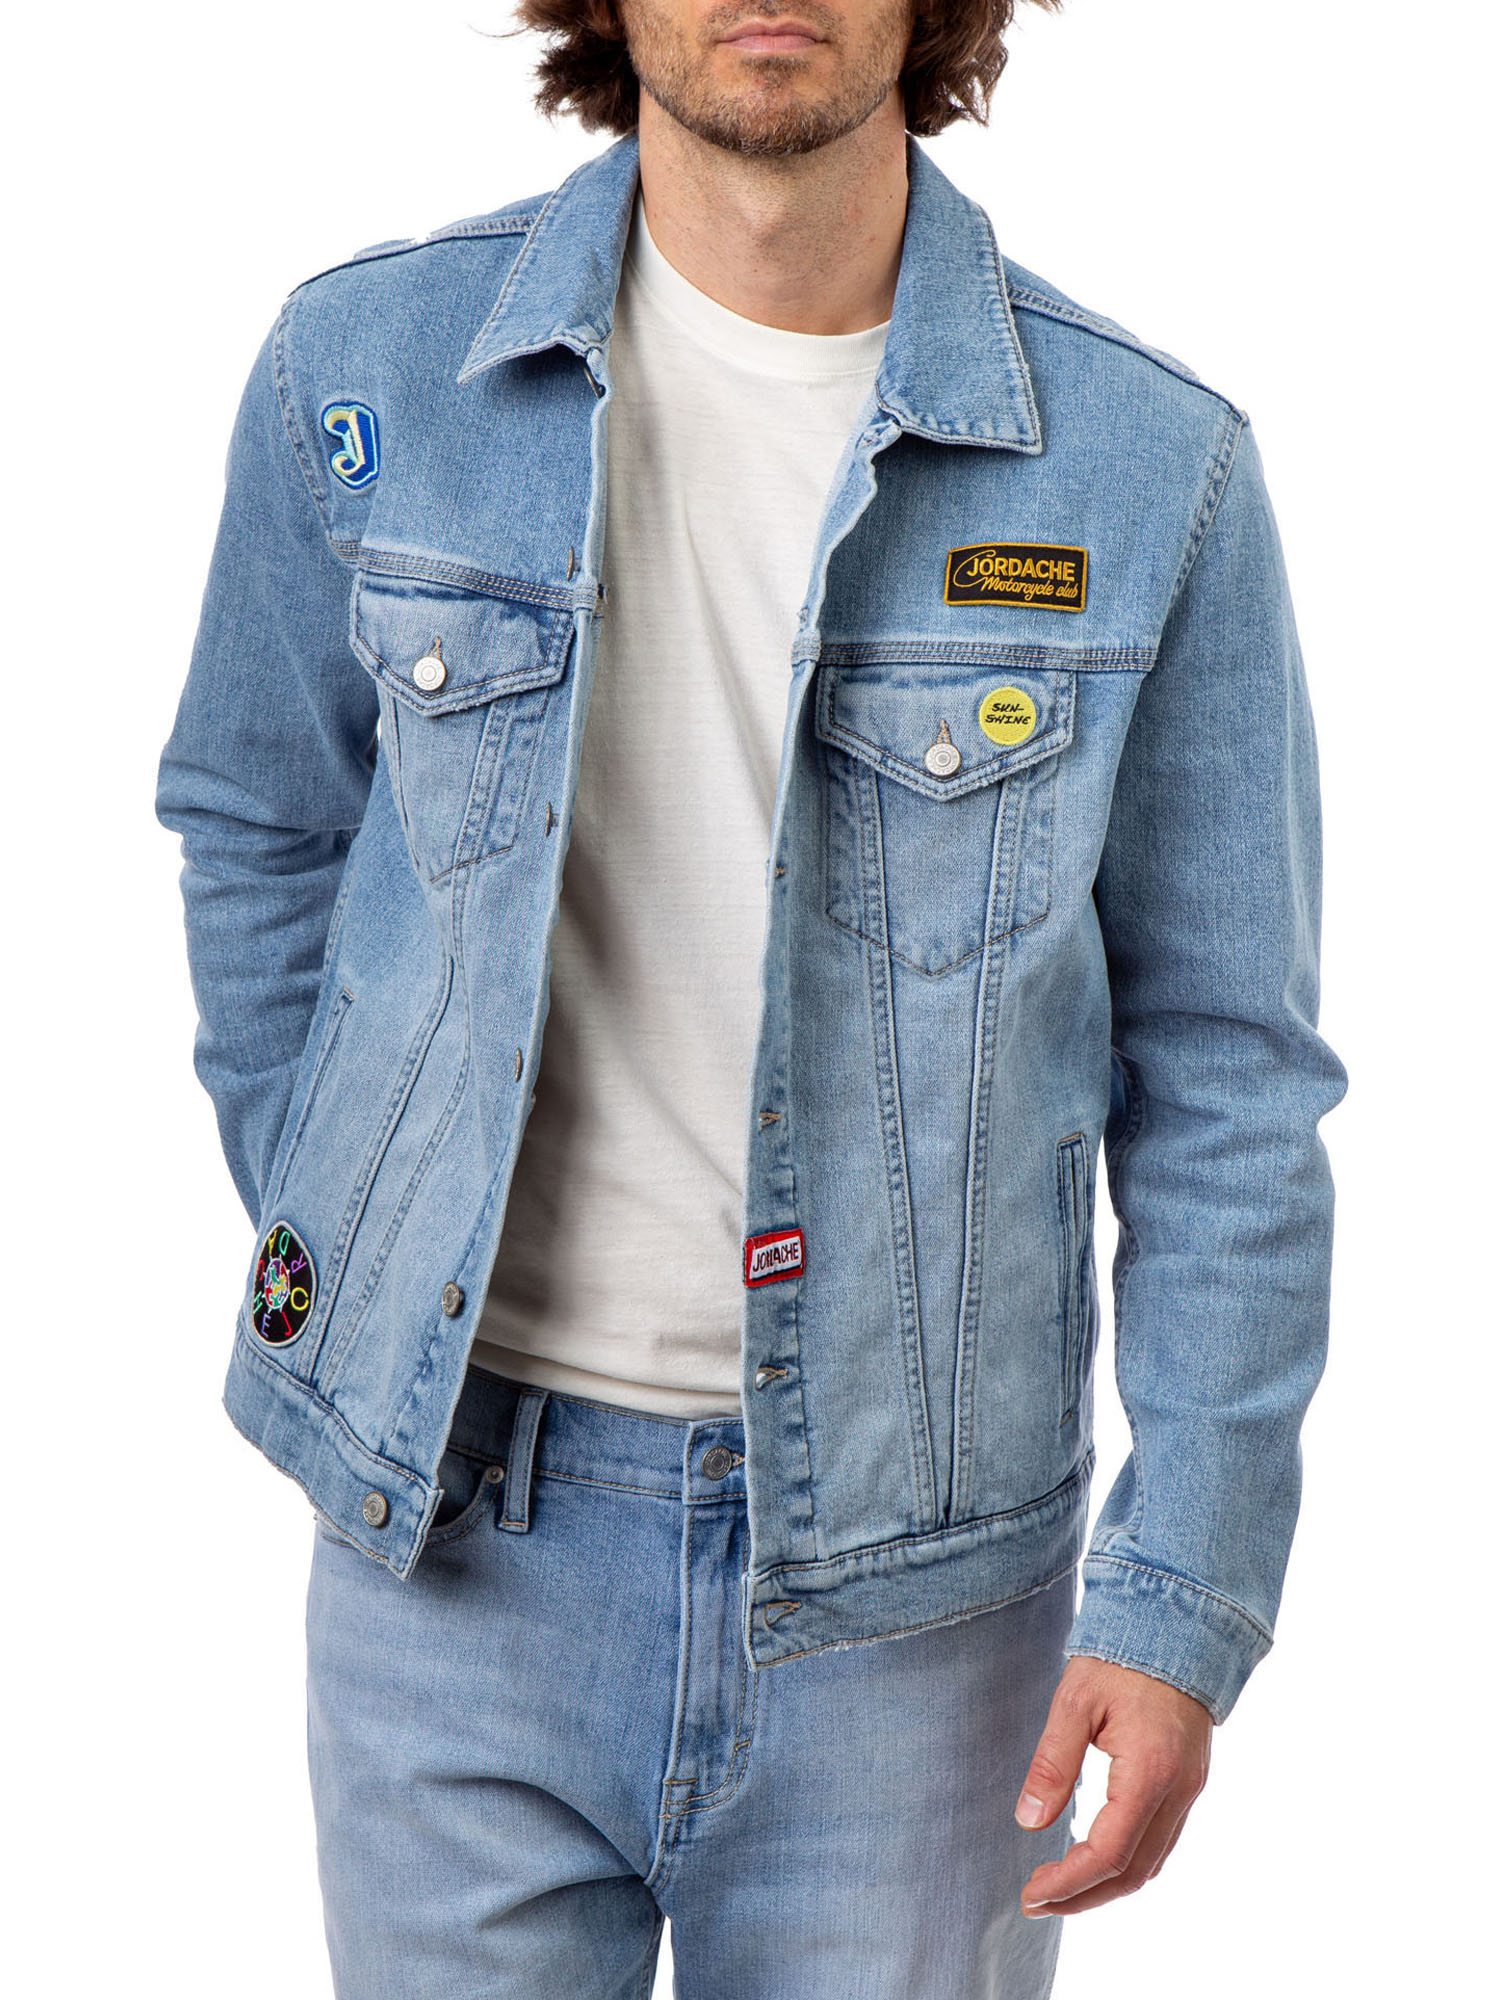 Jordache Vintage Men's Nash Patches Denim Jacket, Sizes S-2XL, Men's Denim Jean Jackets - image 1 of 6